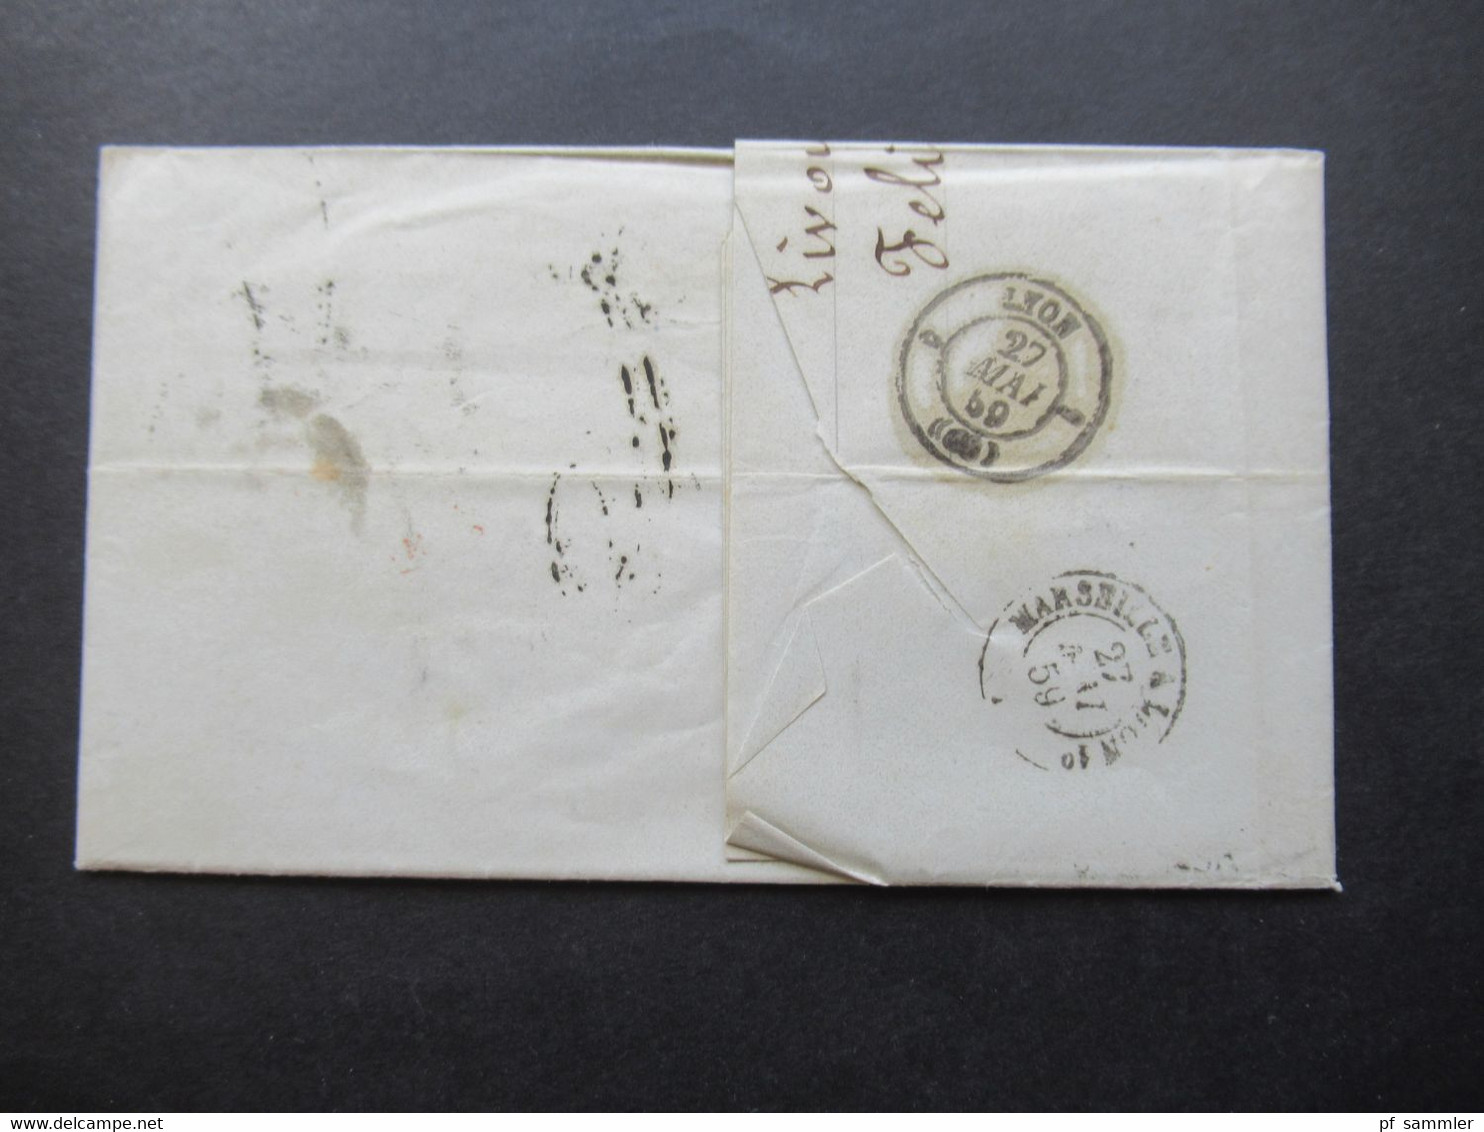 Auslandsbrief Mit Inhalt 1859 Livorno - Lyon Roter K2 Tosc Marseille Handschriftlicher Vermerk Vapeur Via Marseille - Tuscany